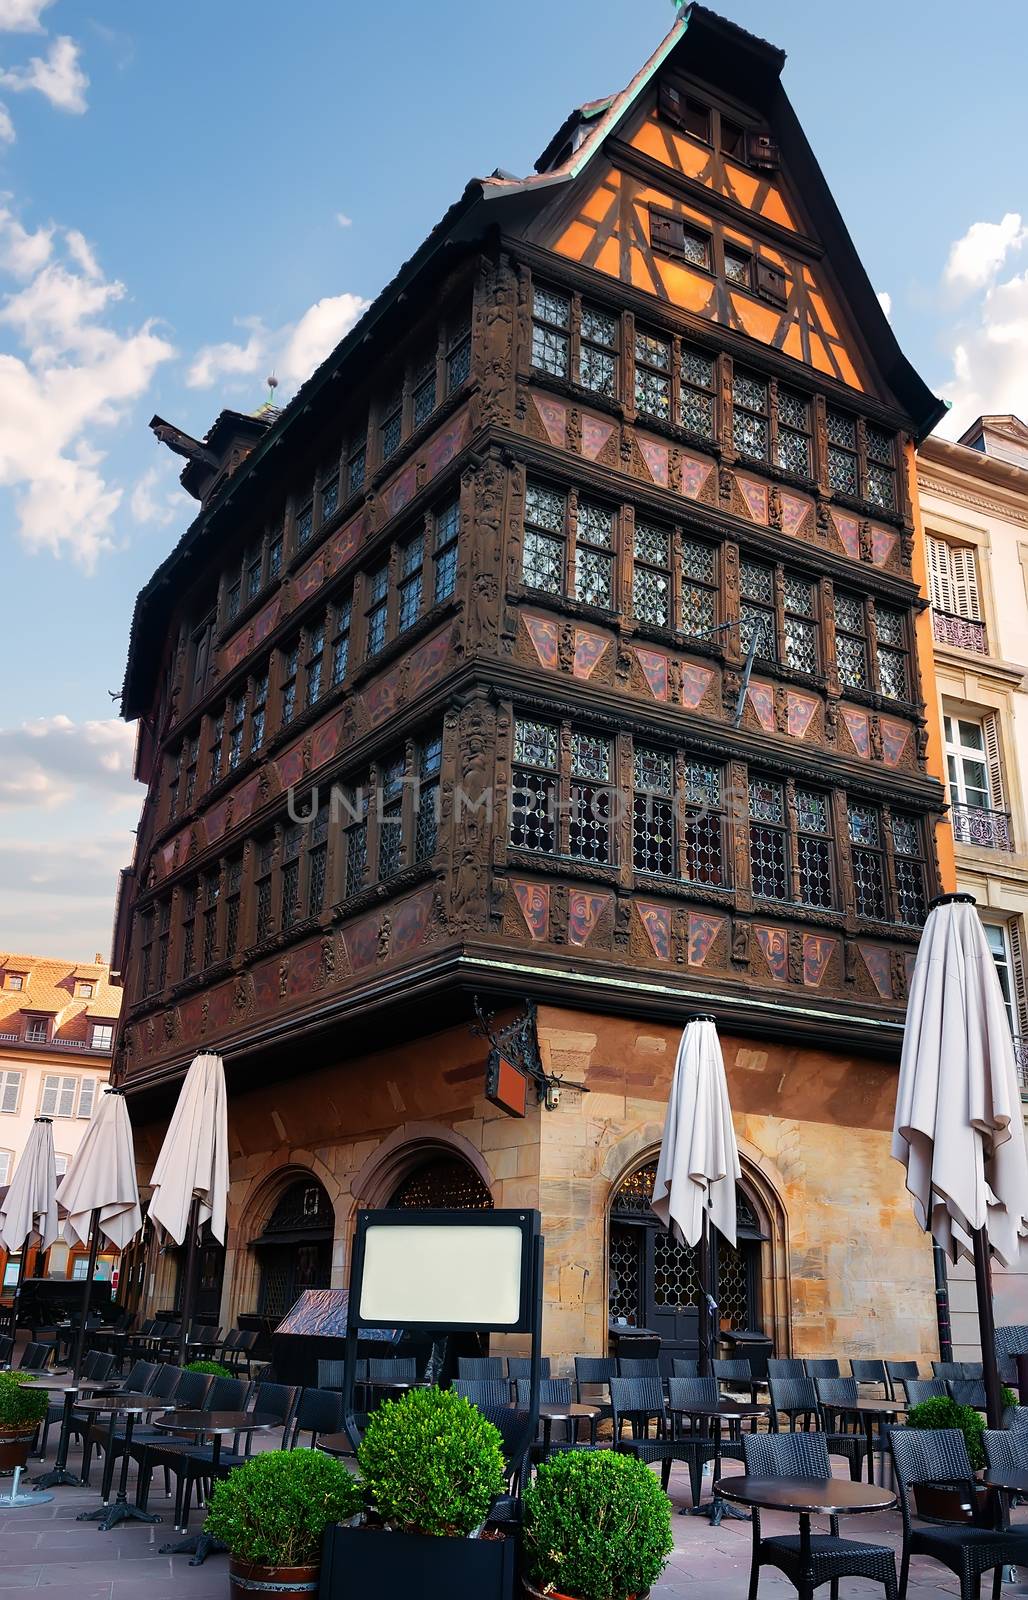 Restaurant near House of Kammerzell in Strasbourg, France